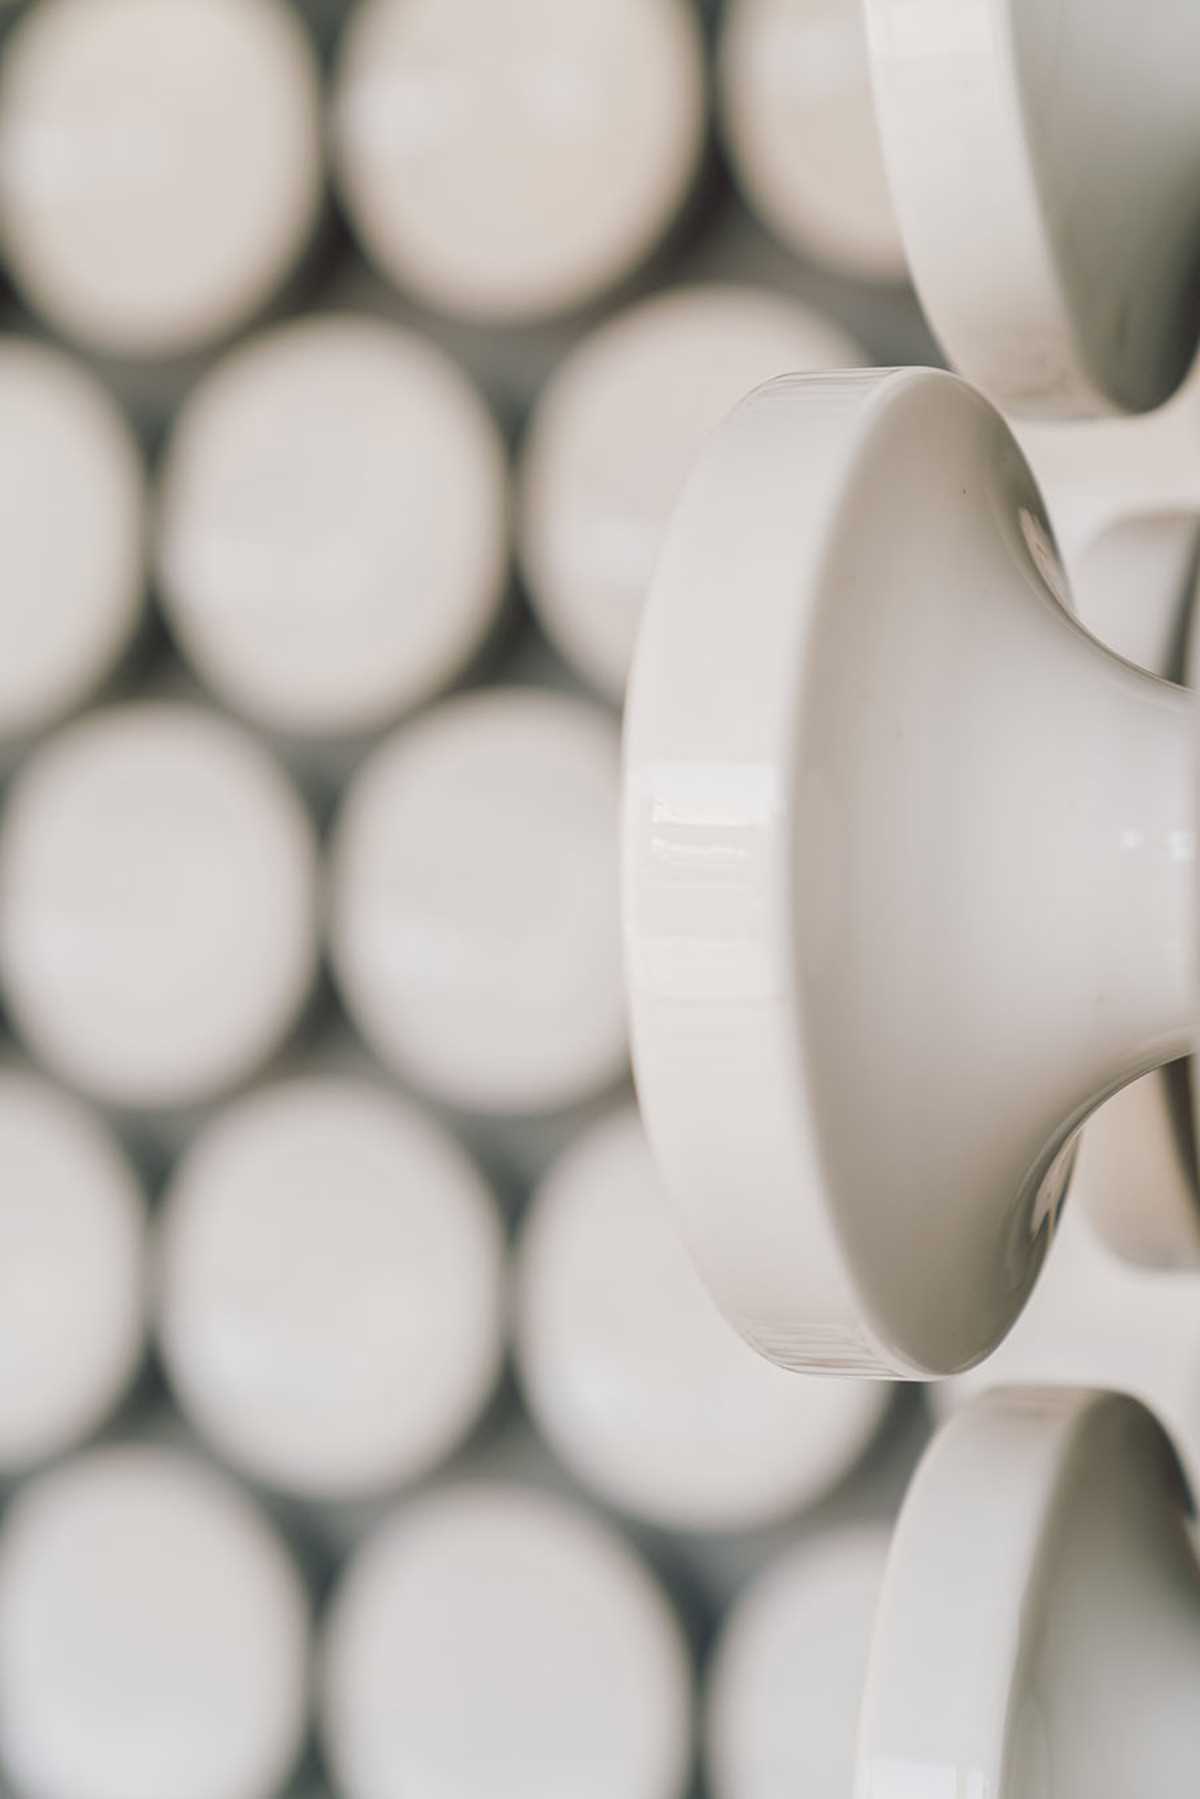 500 discos de cerâmica branca revestem as paredes desta moderna clínica odontológica.